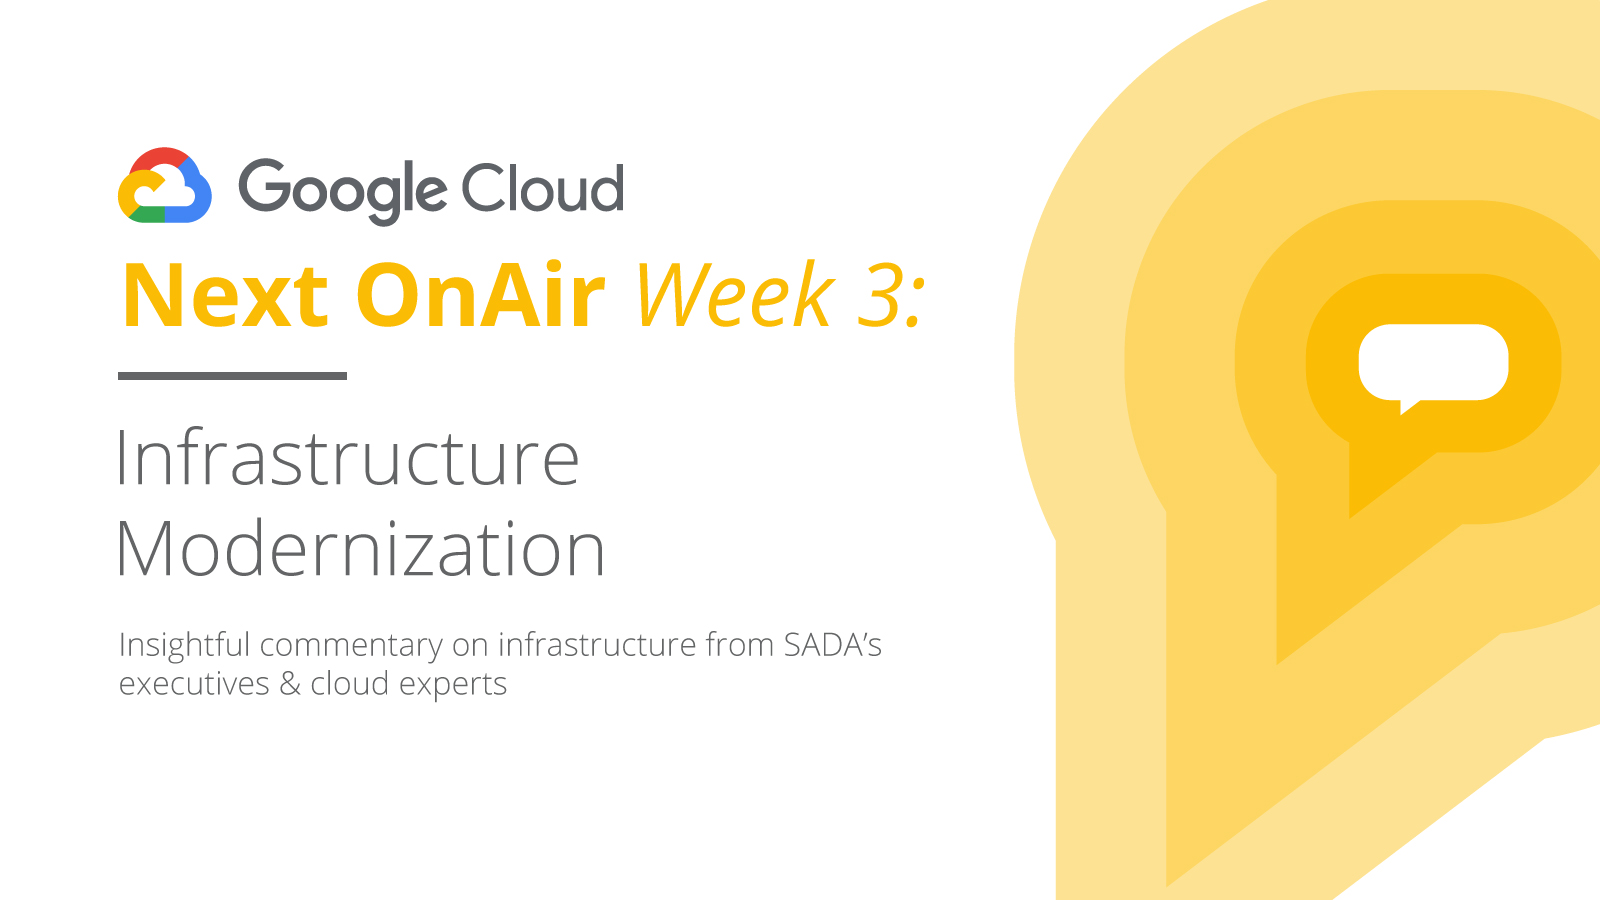 Google Cloud Next OnAir Week 3 Infrastructure Modernization